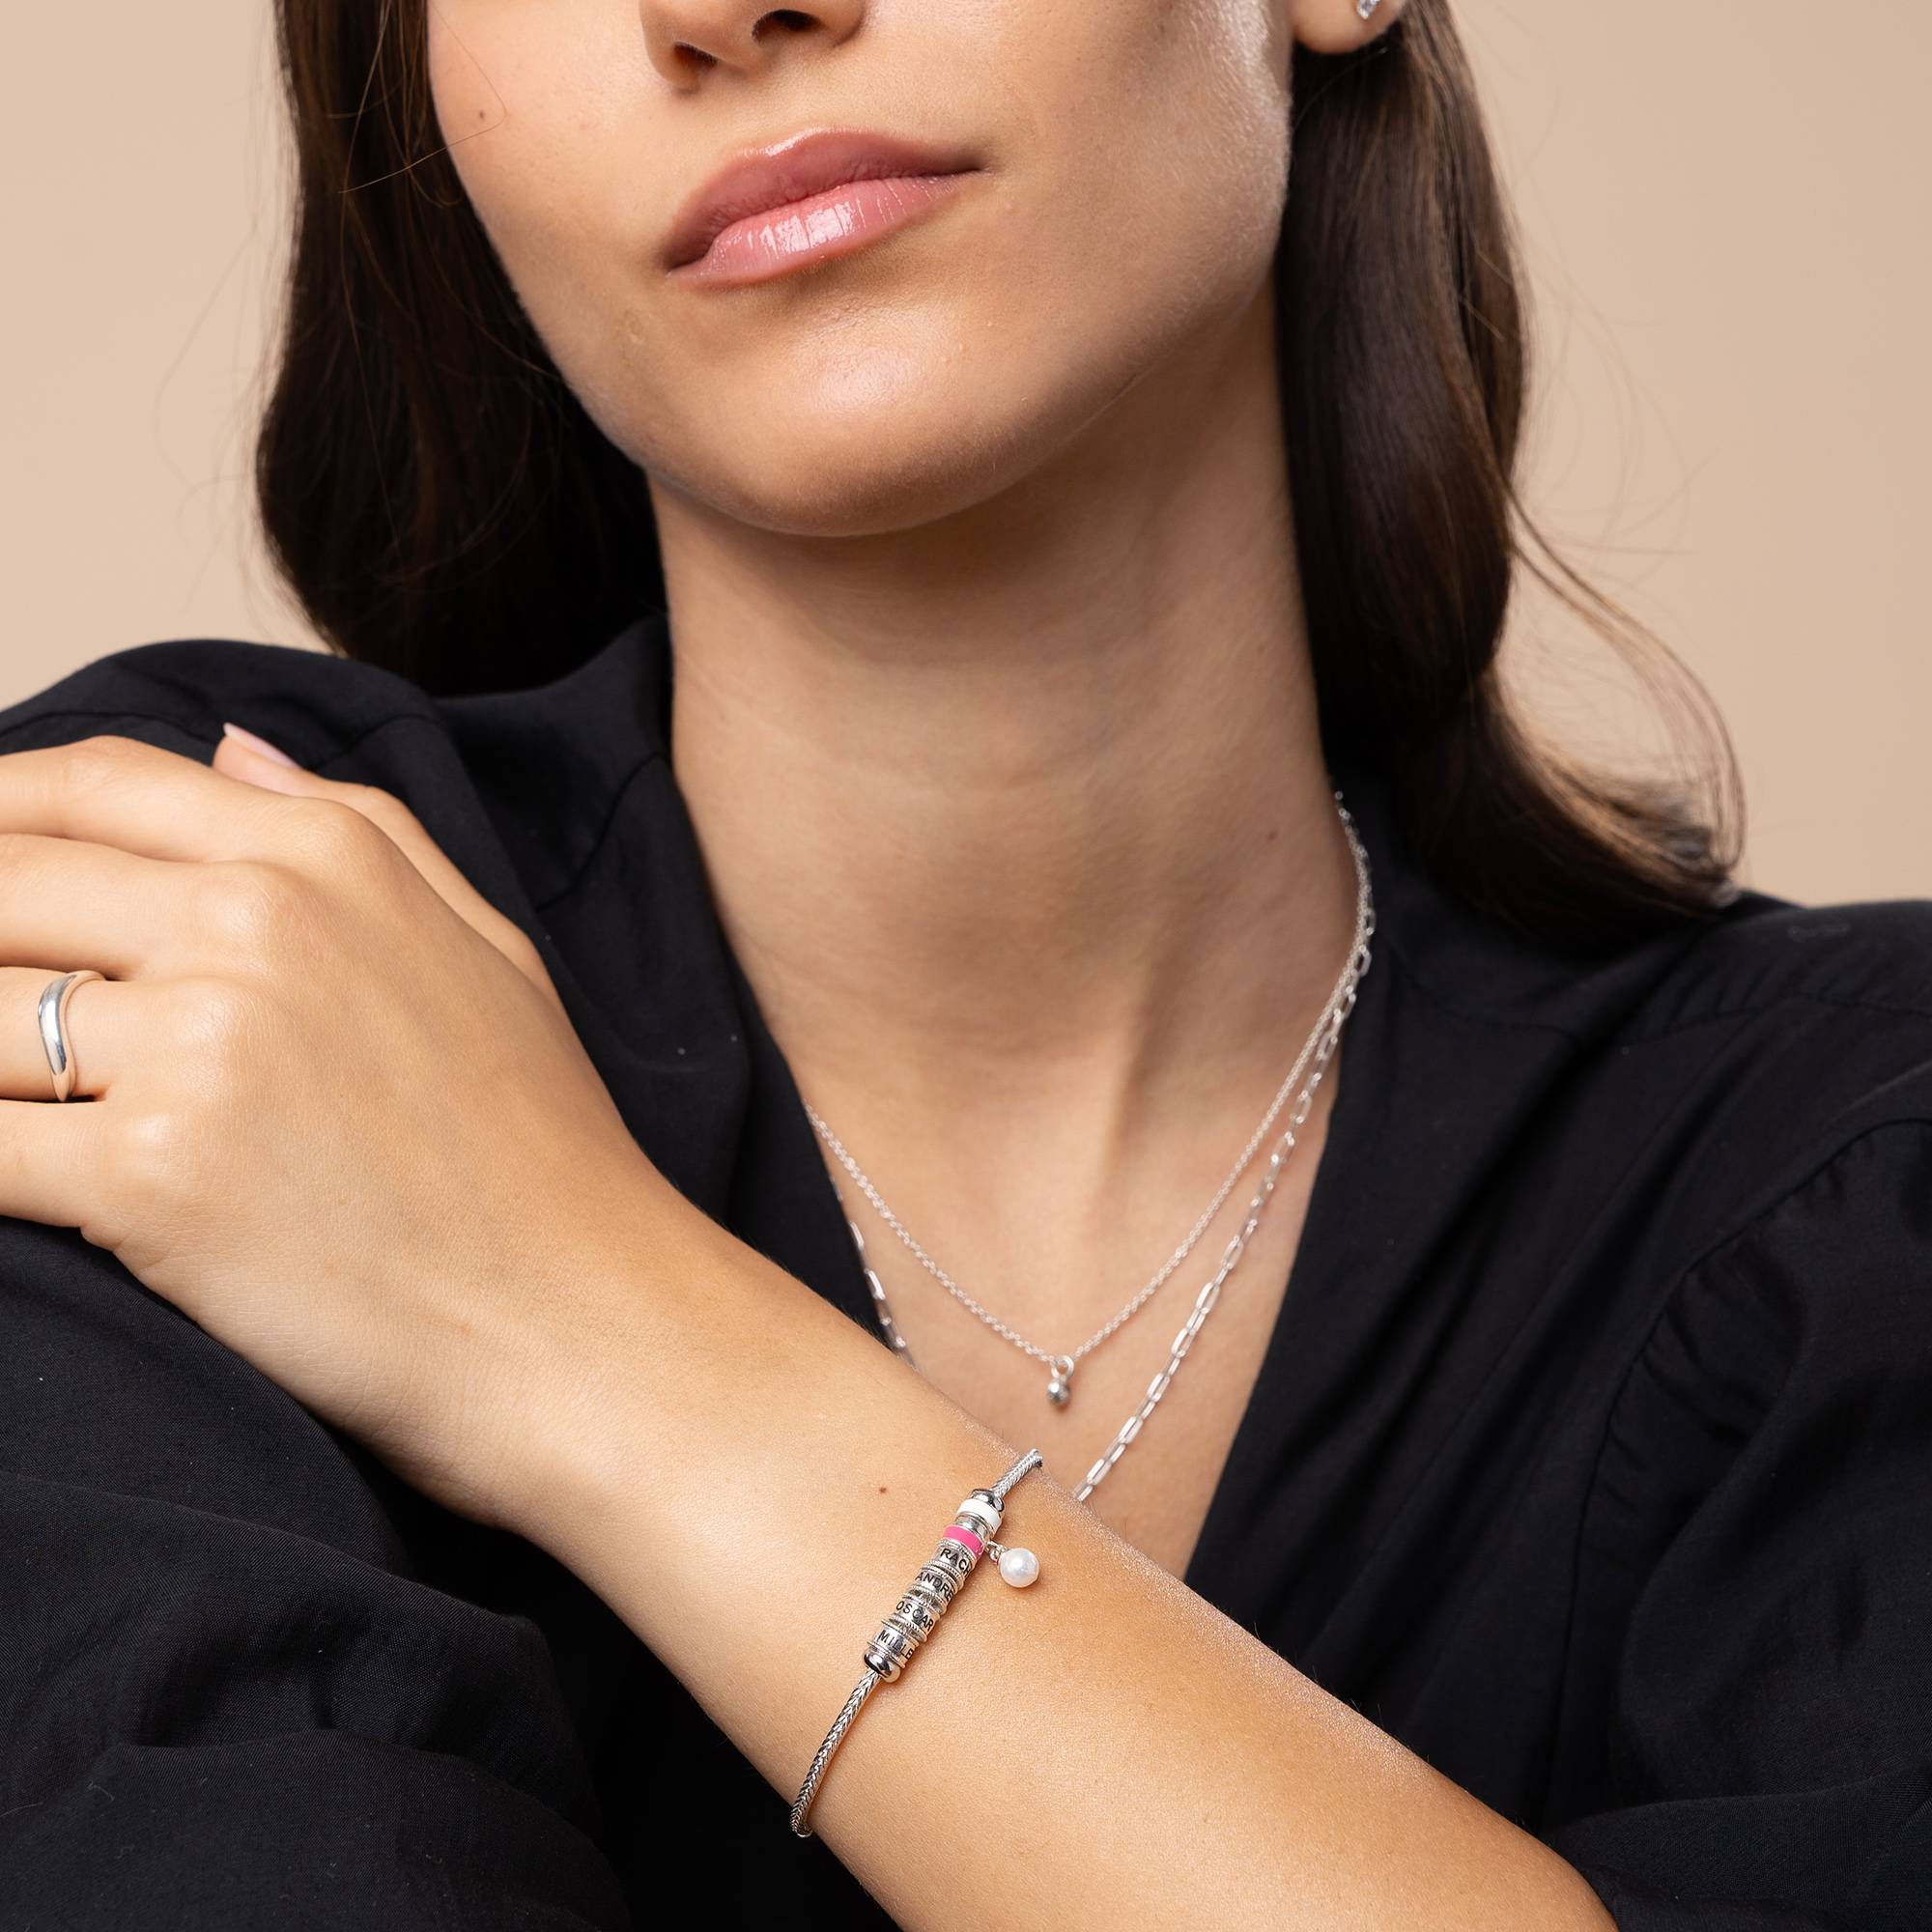 Linda Armband met Hartvormig Slotje, Diamant & emaille kralen in Sterling Zilver-5 Productfoto